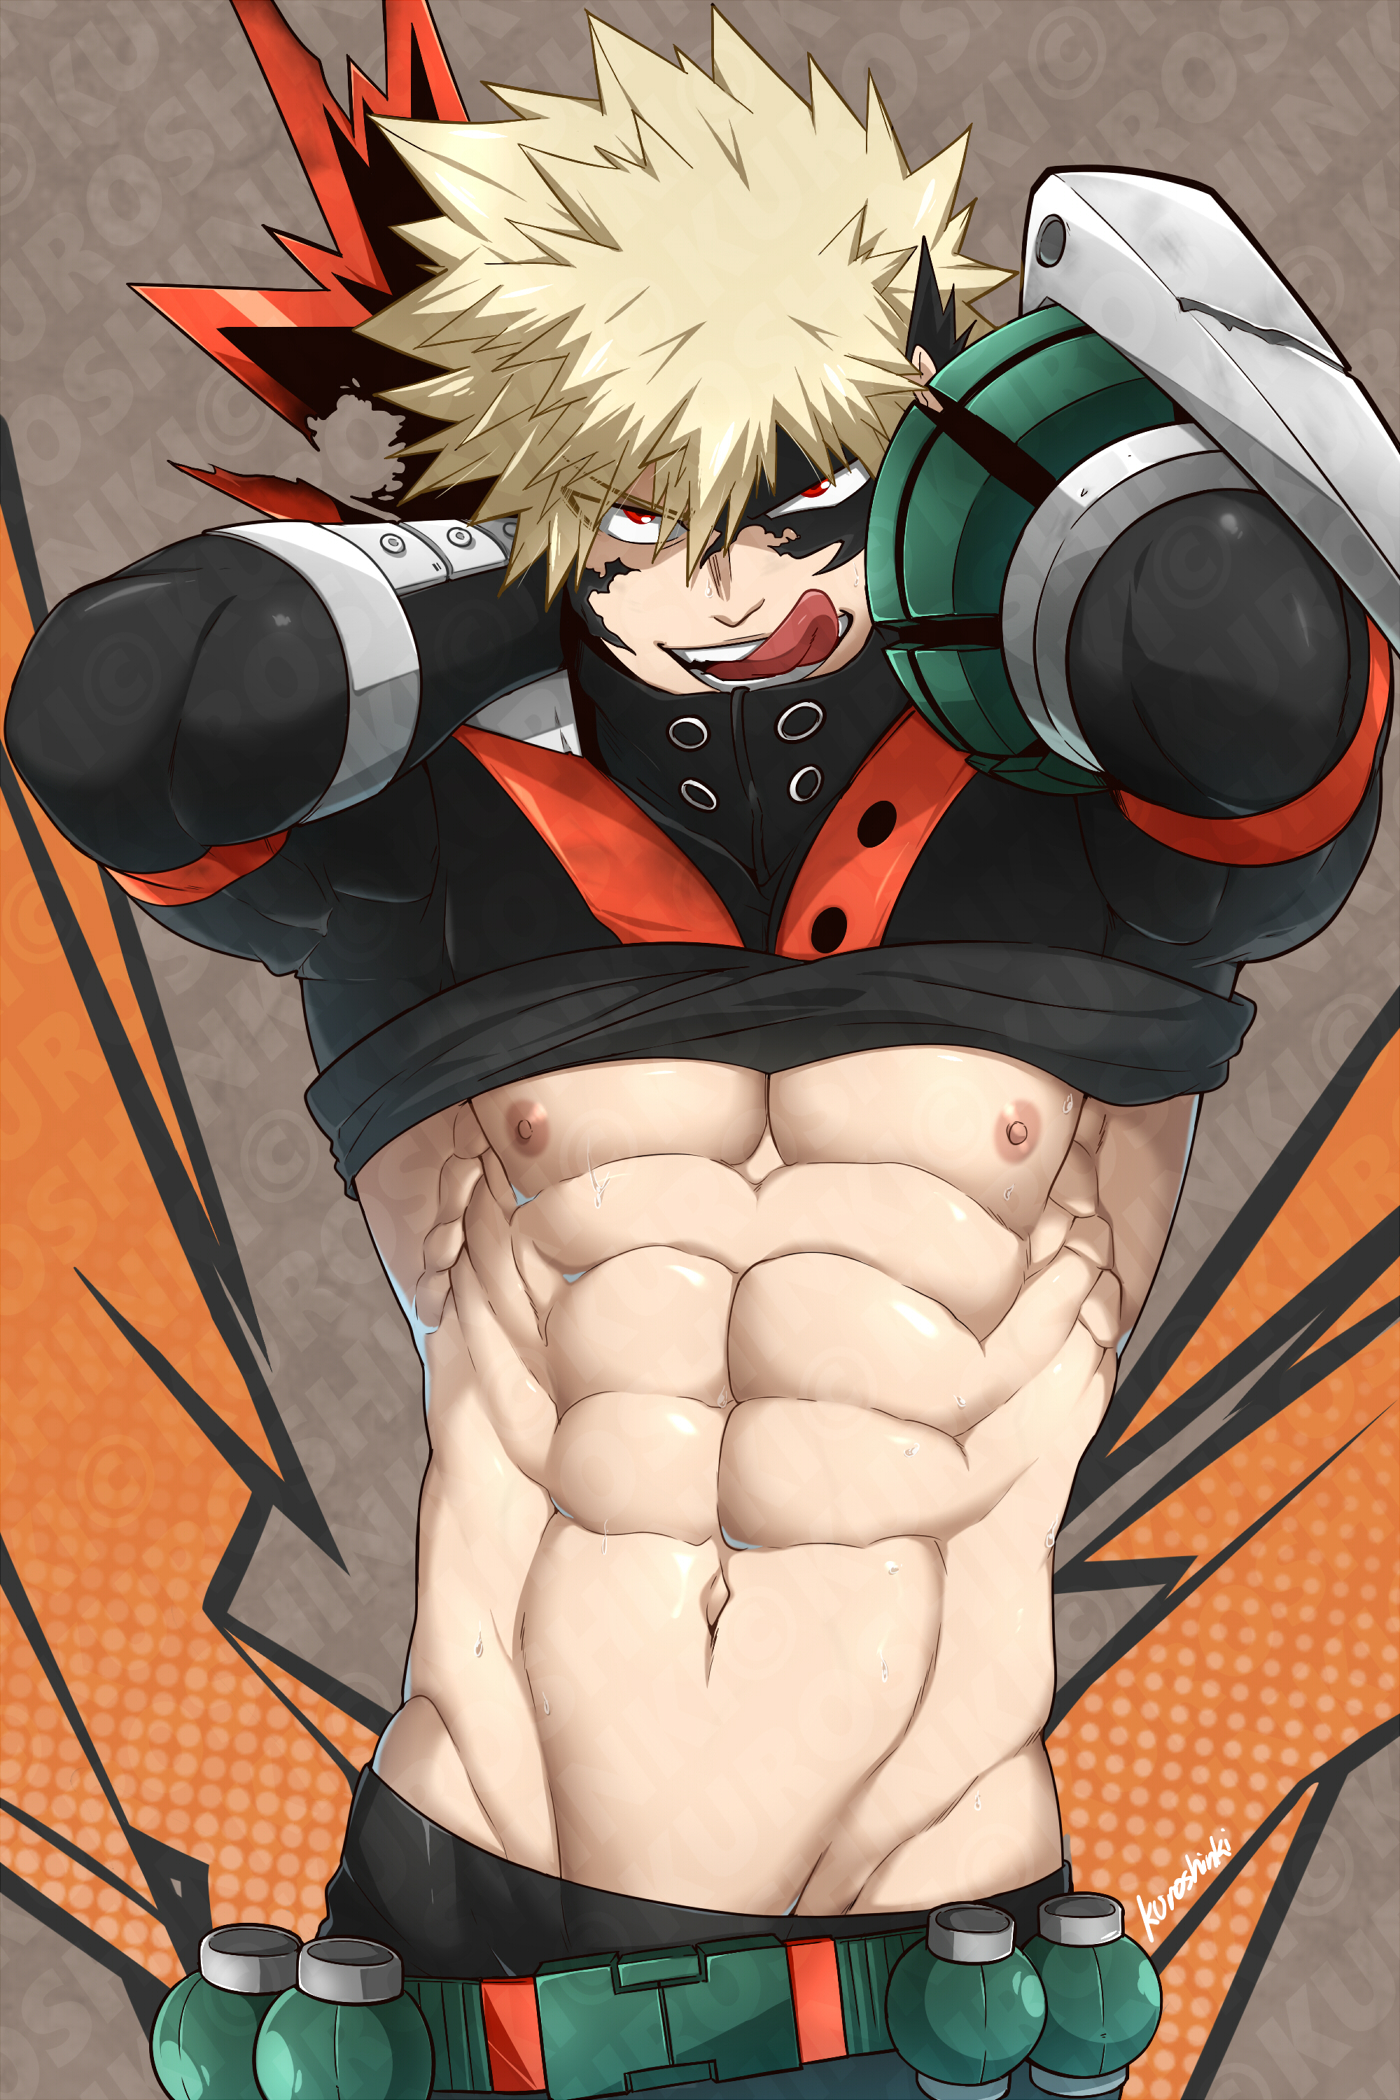 Anime 1400x2100 anime boys muscles muscular abs Yaoi